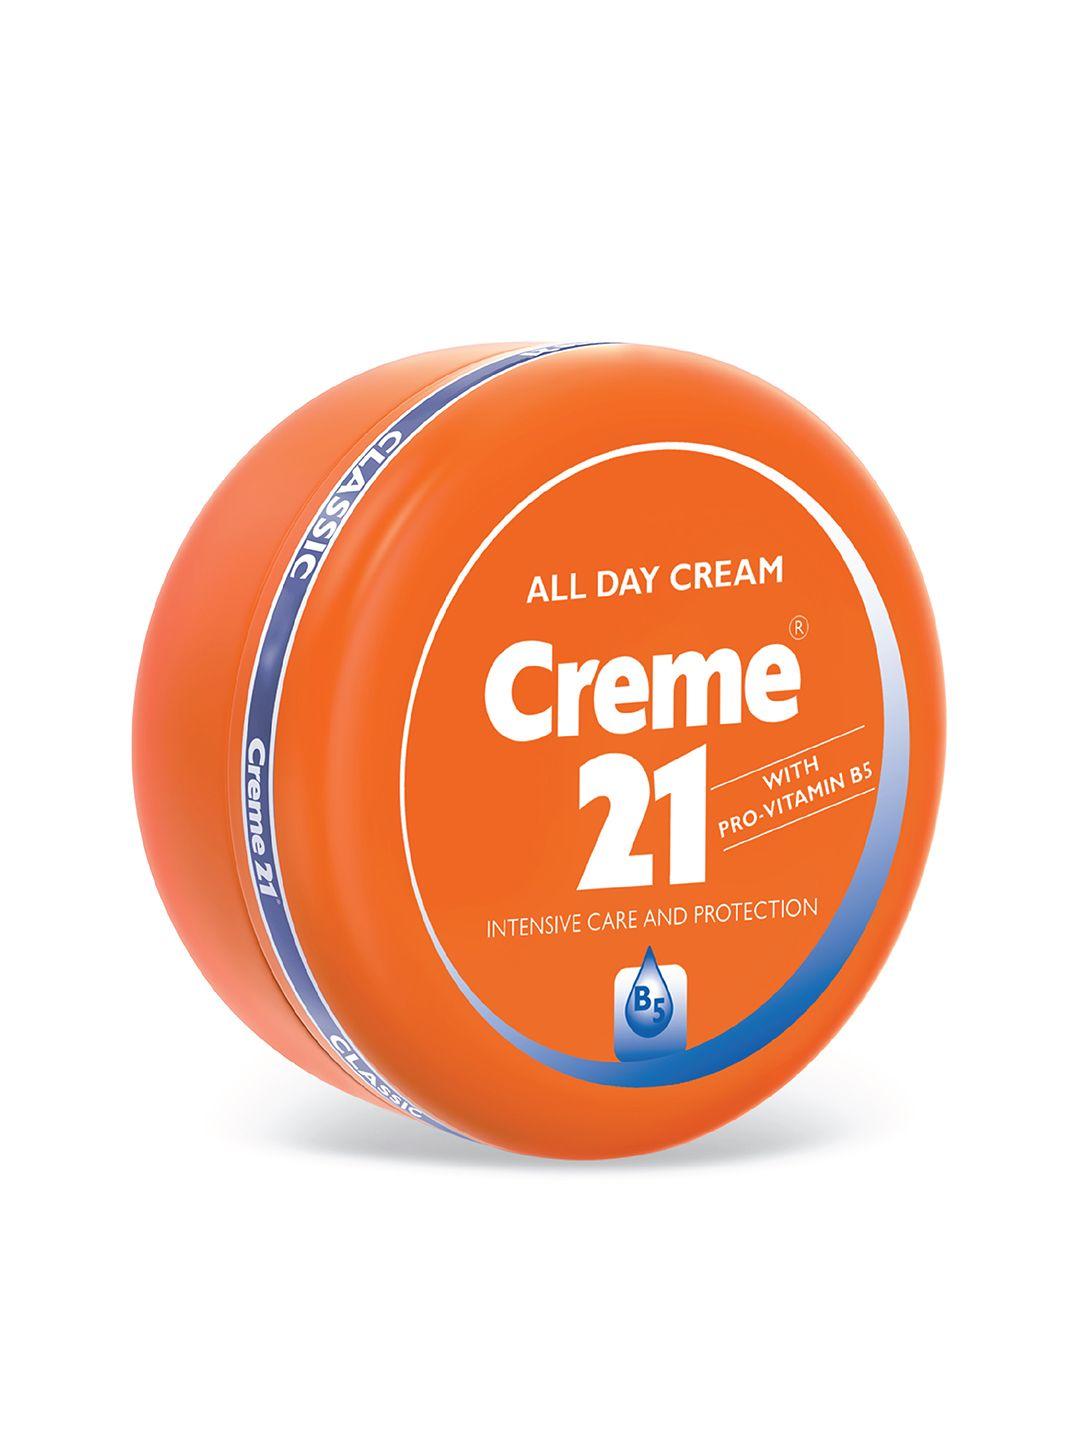 creme 21 pro vitamin b5 & e all day cream - 250 ml